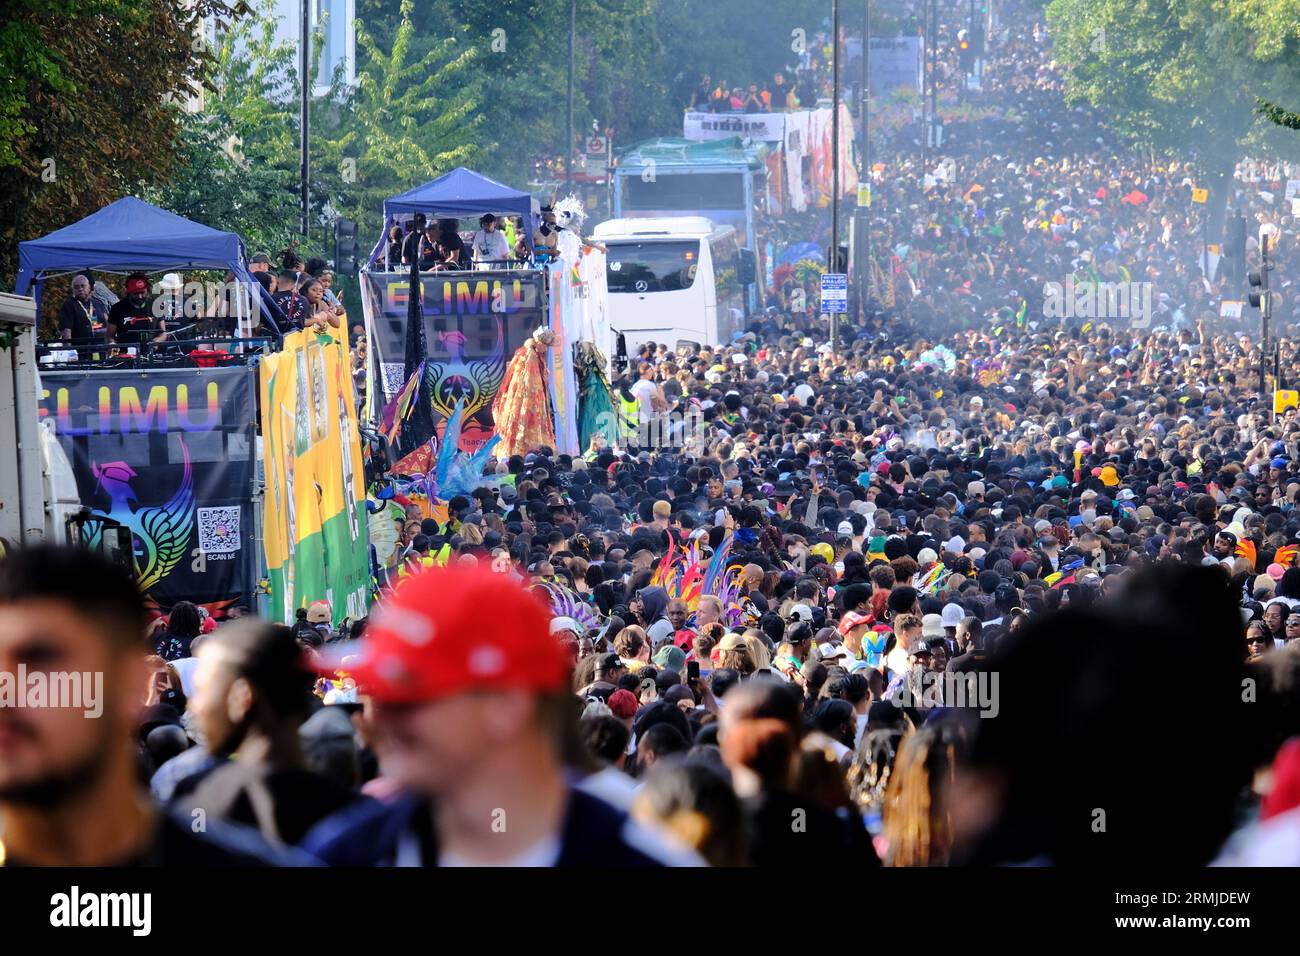 Londres, Royaume-Uni. Des foules de fêtards à Ladbroke Grove alors que le Carnaval de Notting Hill bat son plein le lundi jour férié Banque D'Images